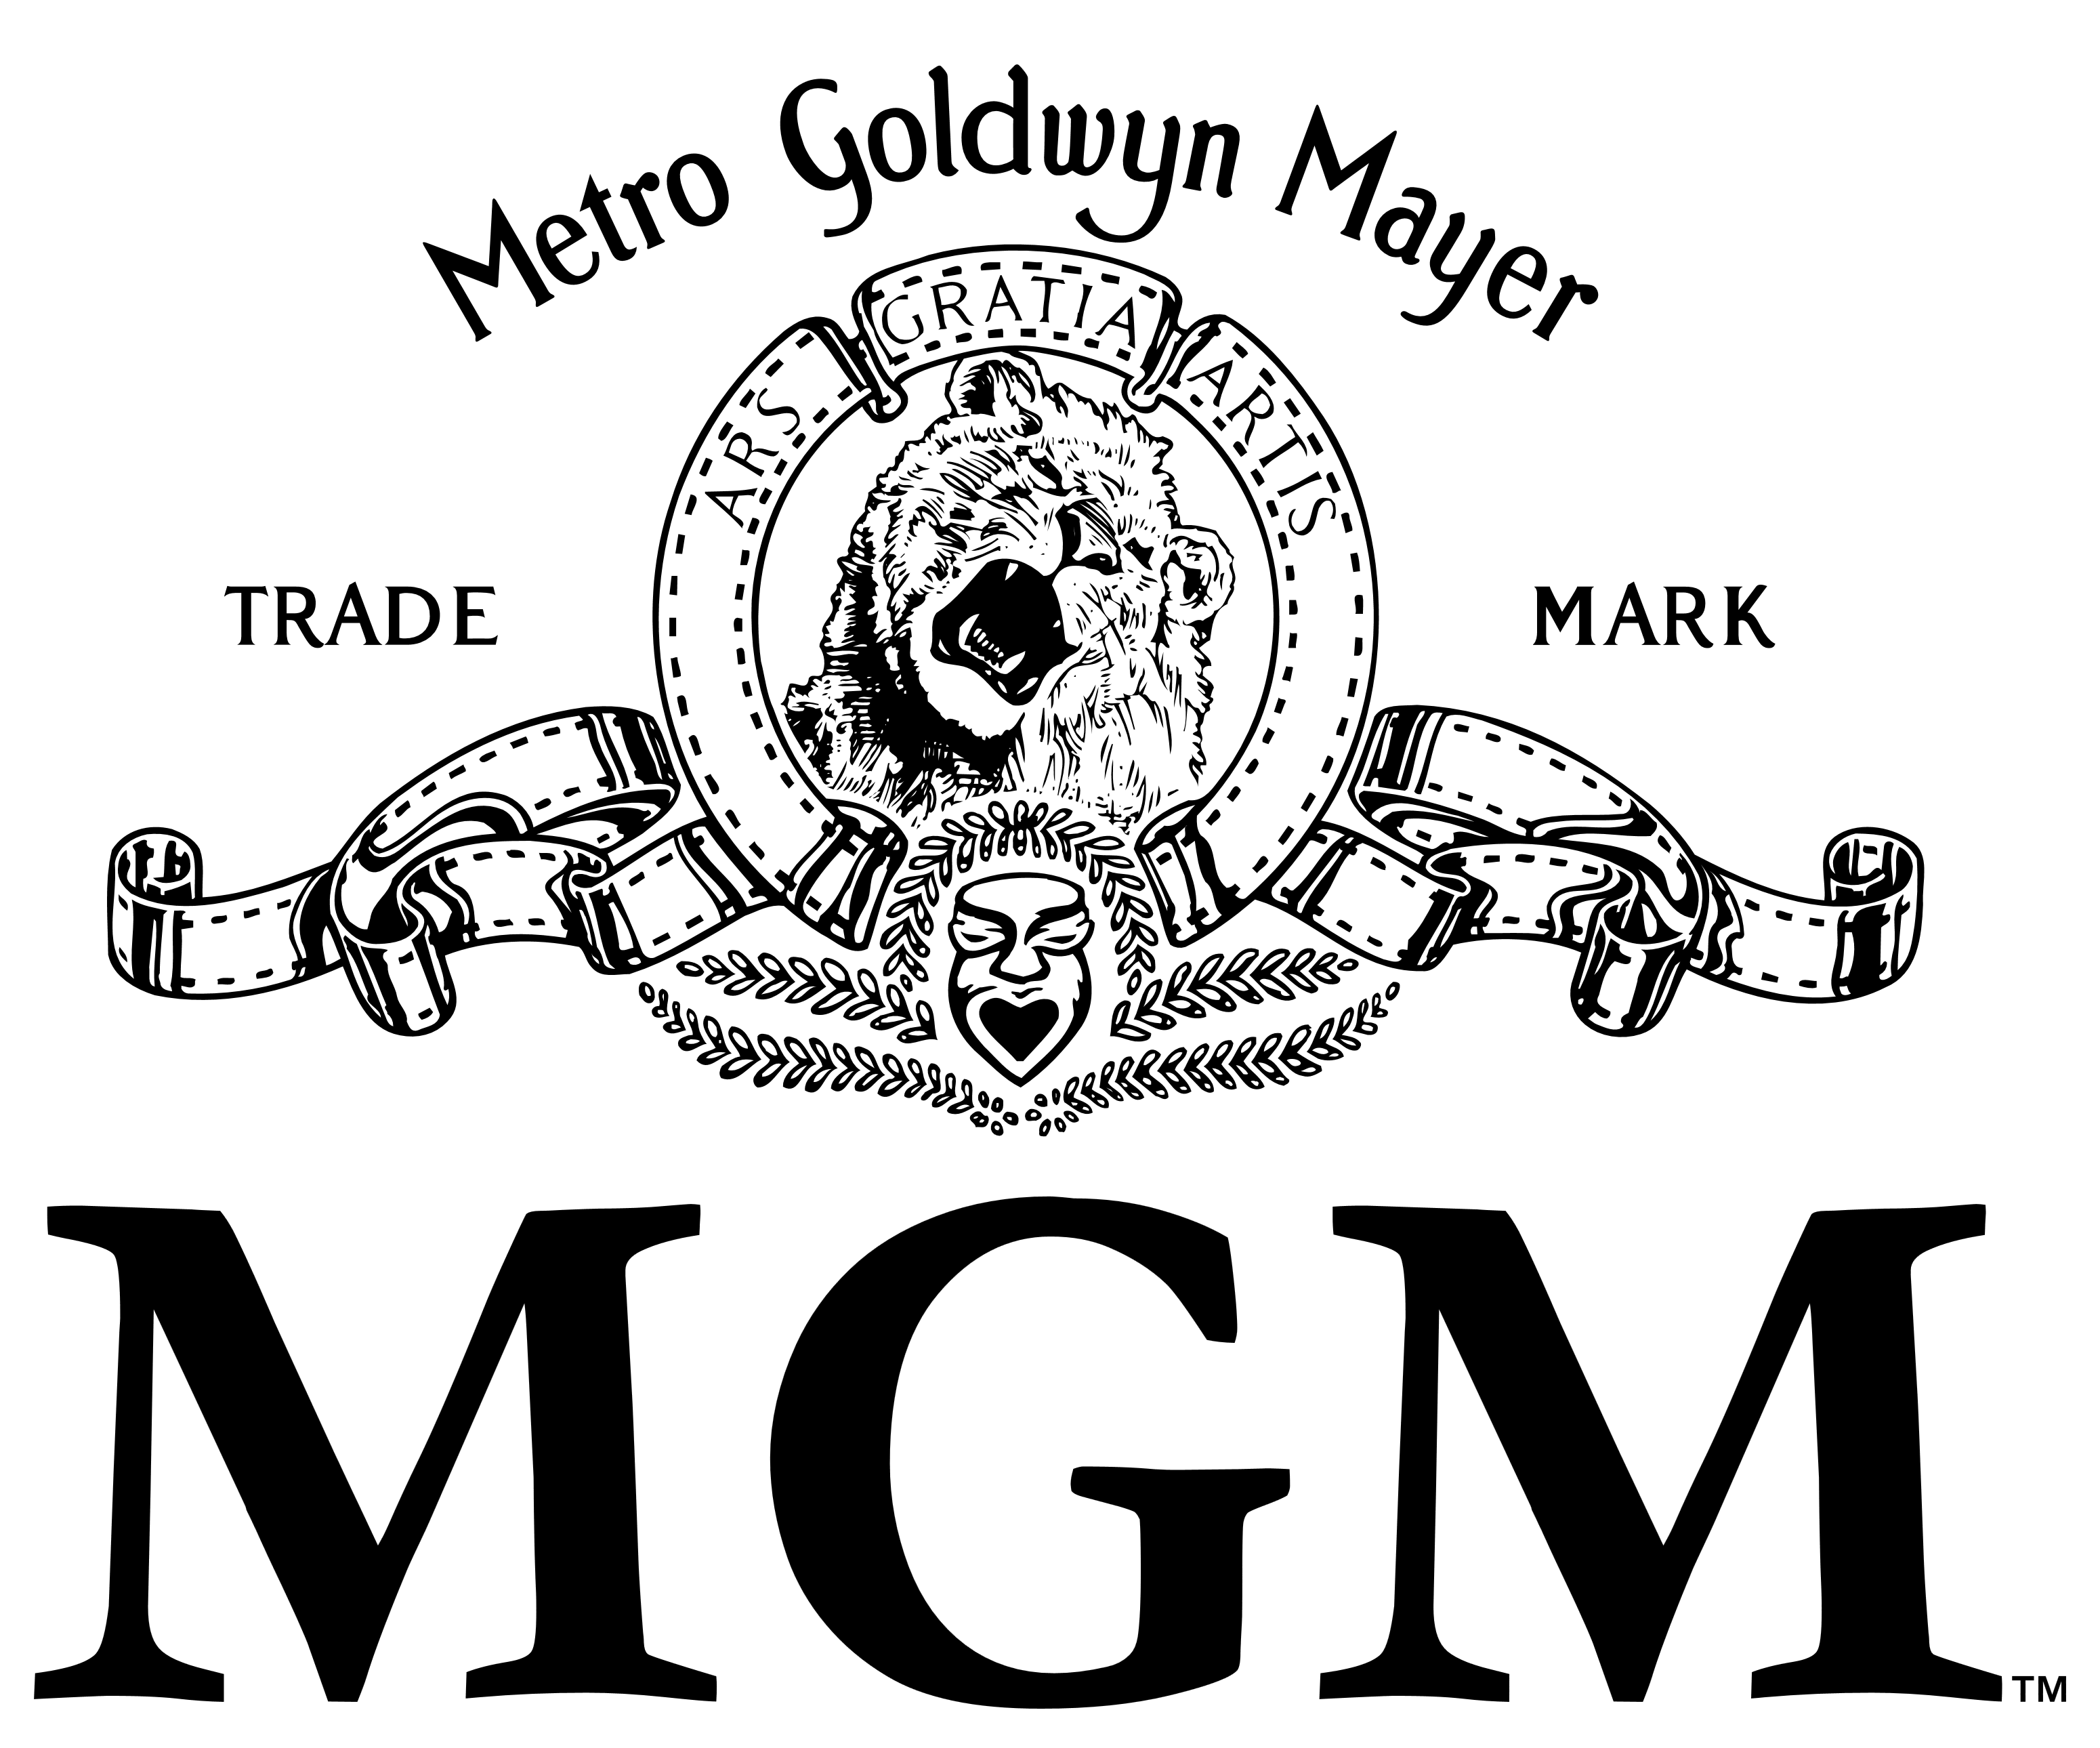 MGM Logo - MGM (Metro Goldwyn Mayer) – Logos Download